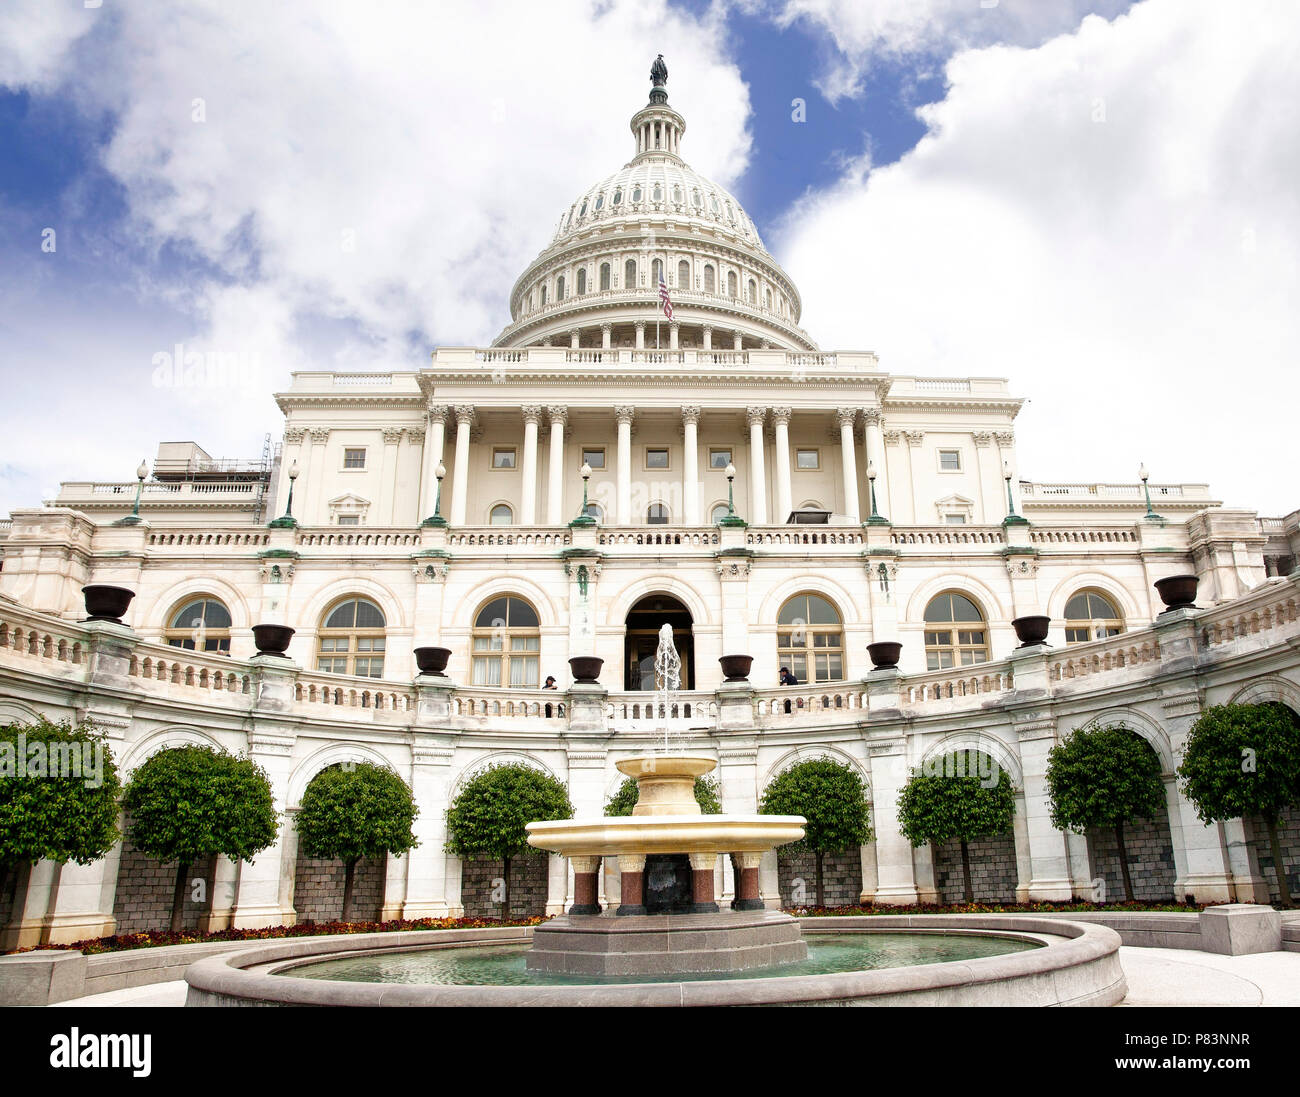 Le bâtiment du Capitole, qui abrite le Sénat et la Chambre des représentants des États-Unis sur le National Mall, Washington, DC. Banque D'Images